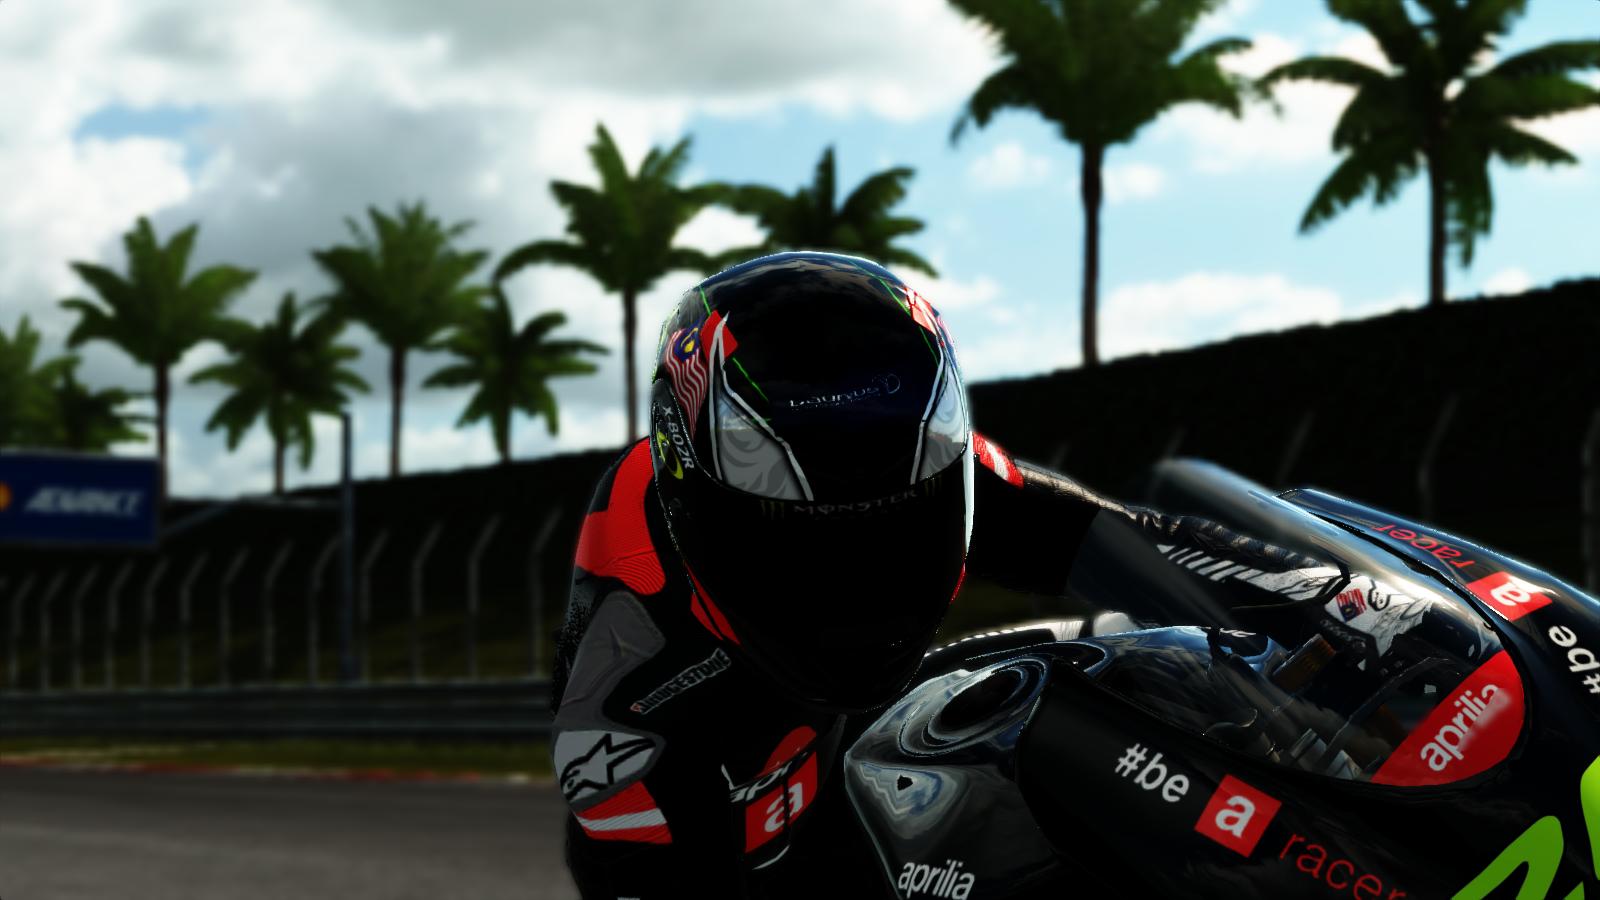 MotoGP14 2014-12-31 15-05-58-33.jpg